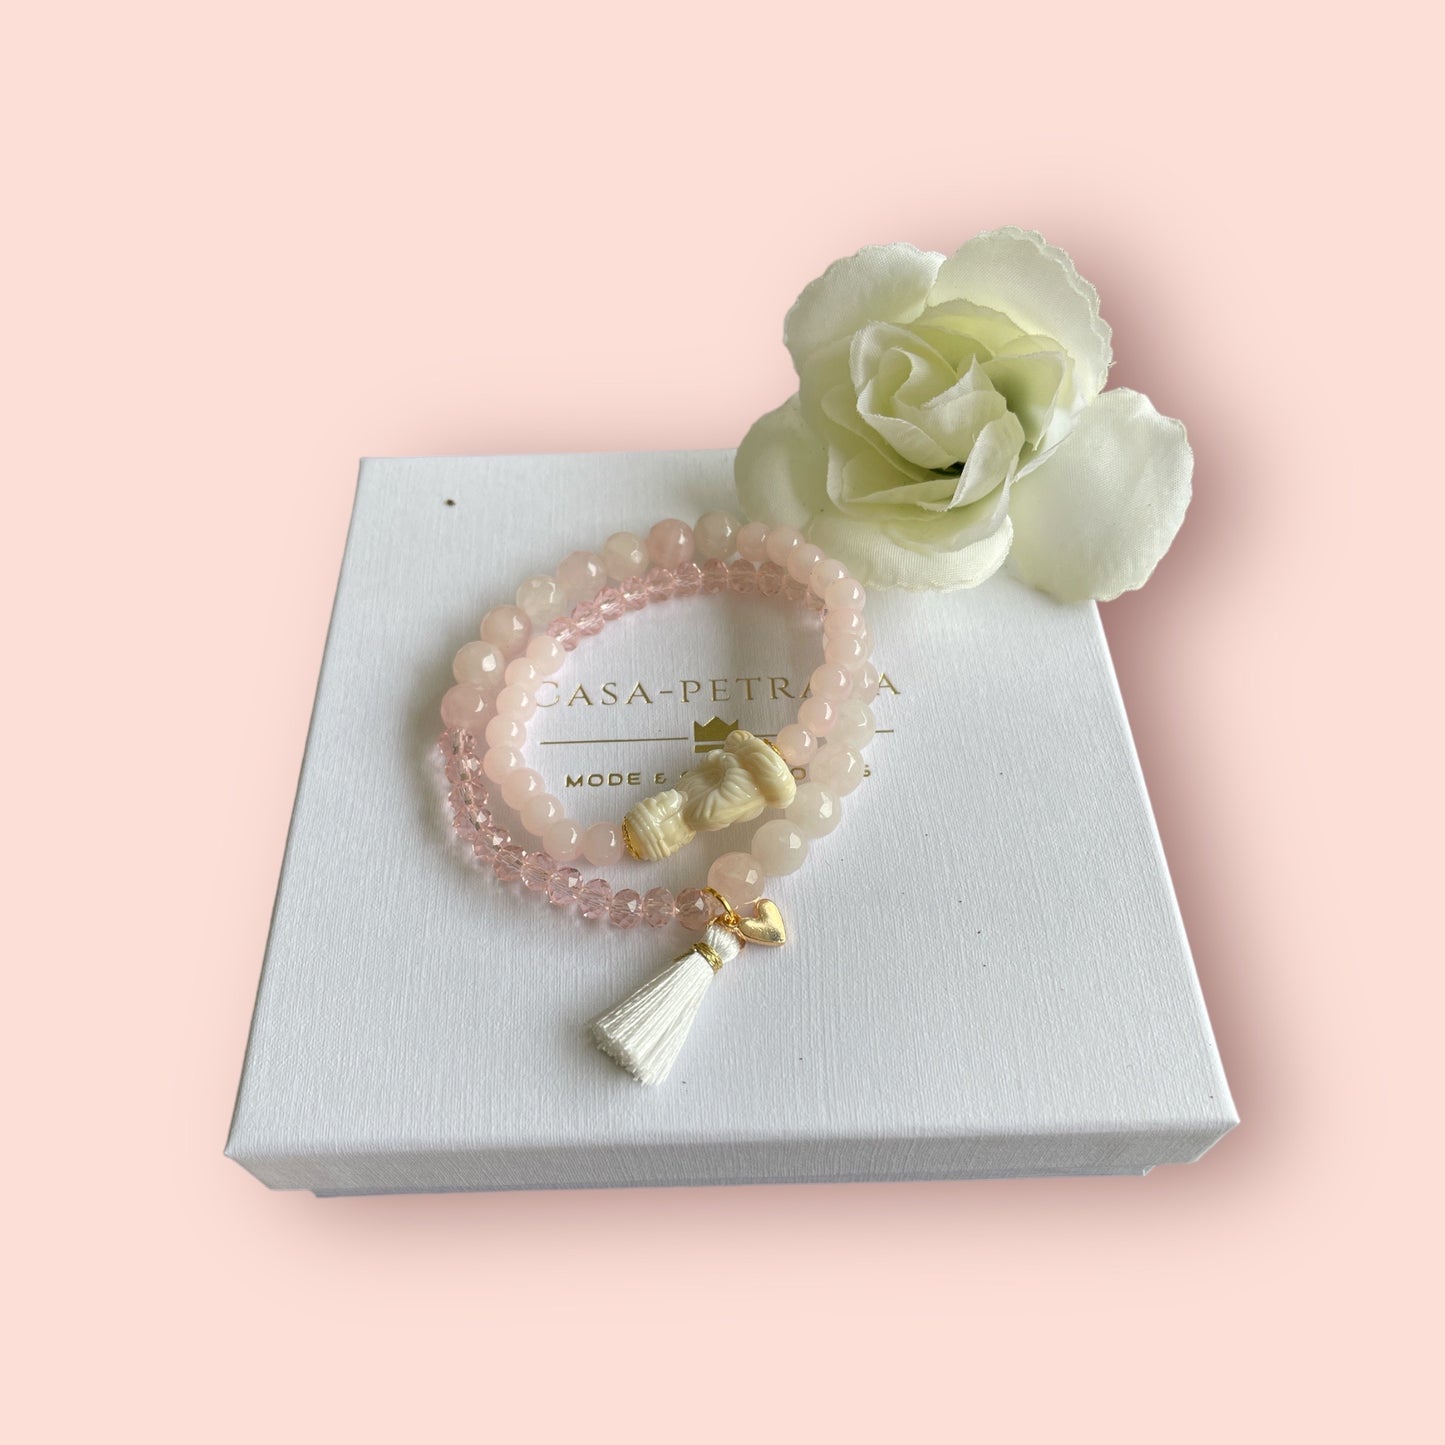 Armband MALCU aus Rosenquarz Perlen mit einer Buddha Perle